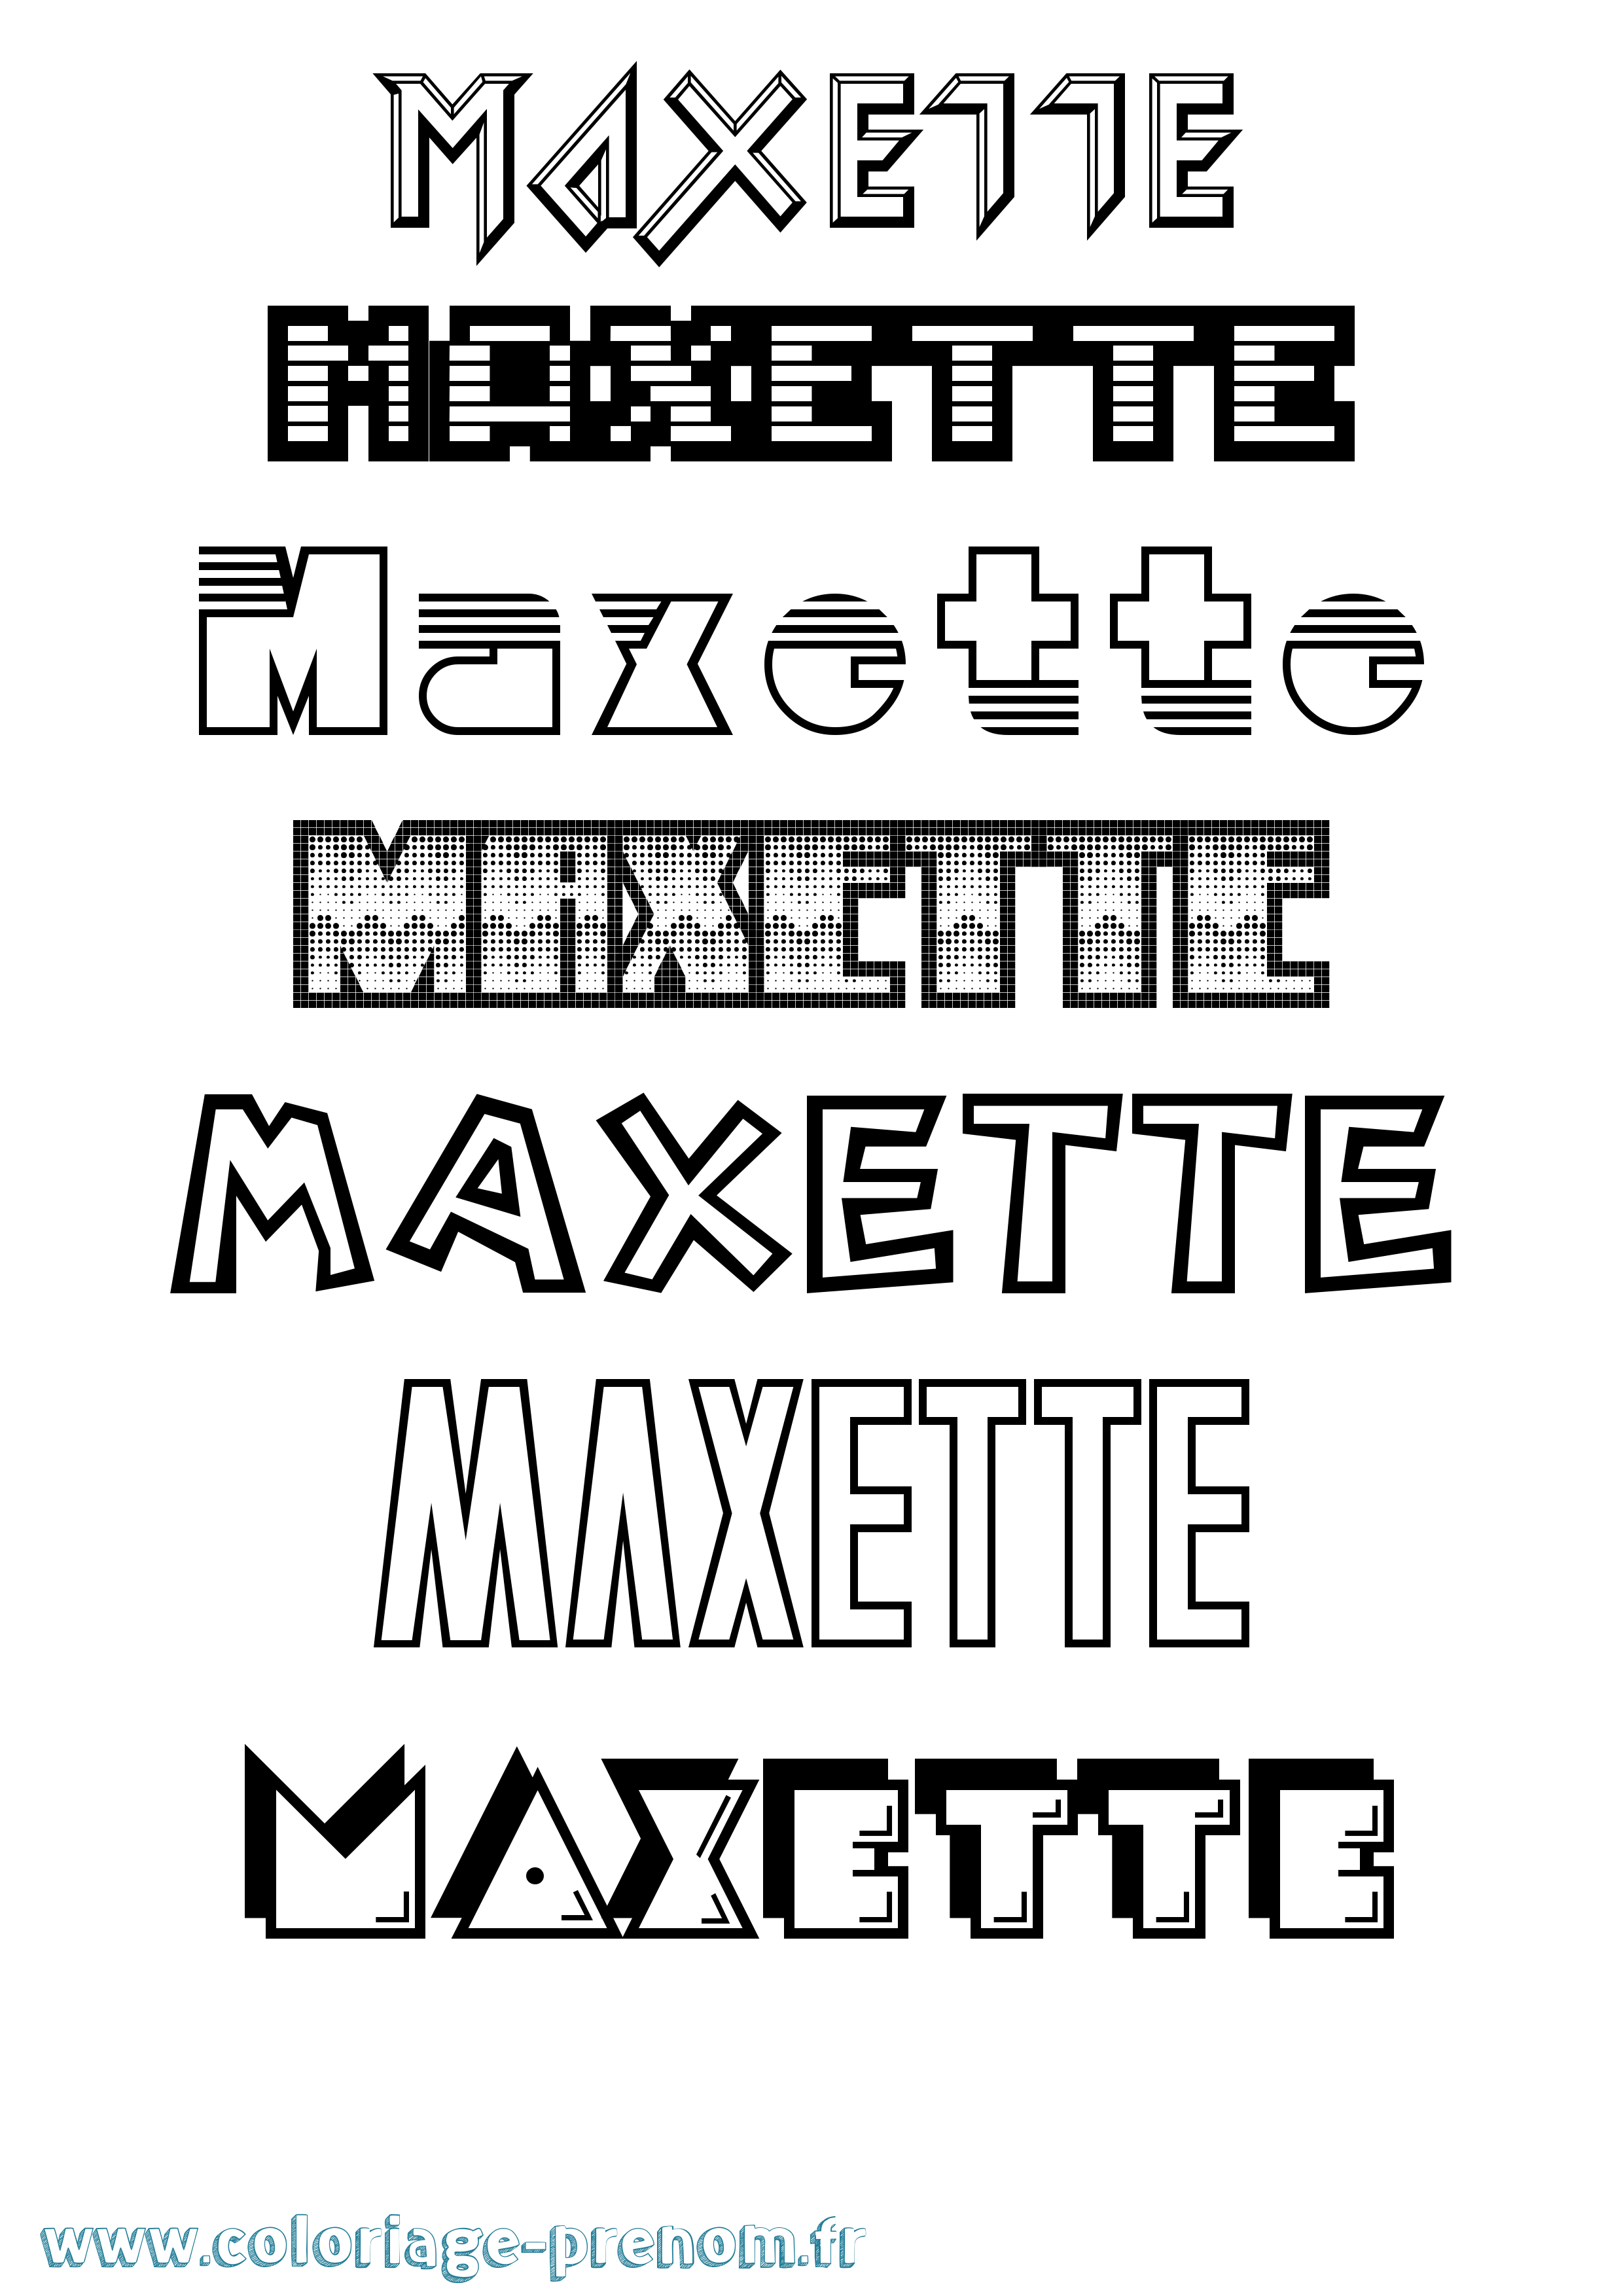 Coloriage prénom Maxette Jeux Vidéos